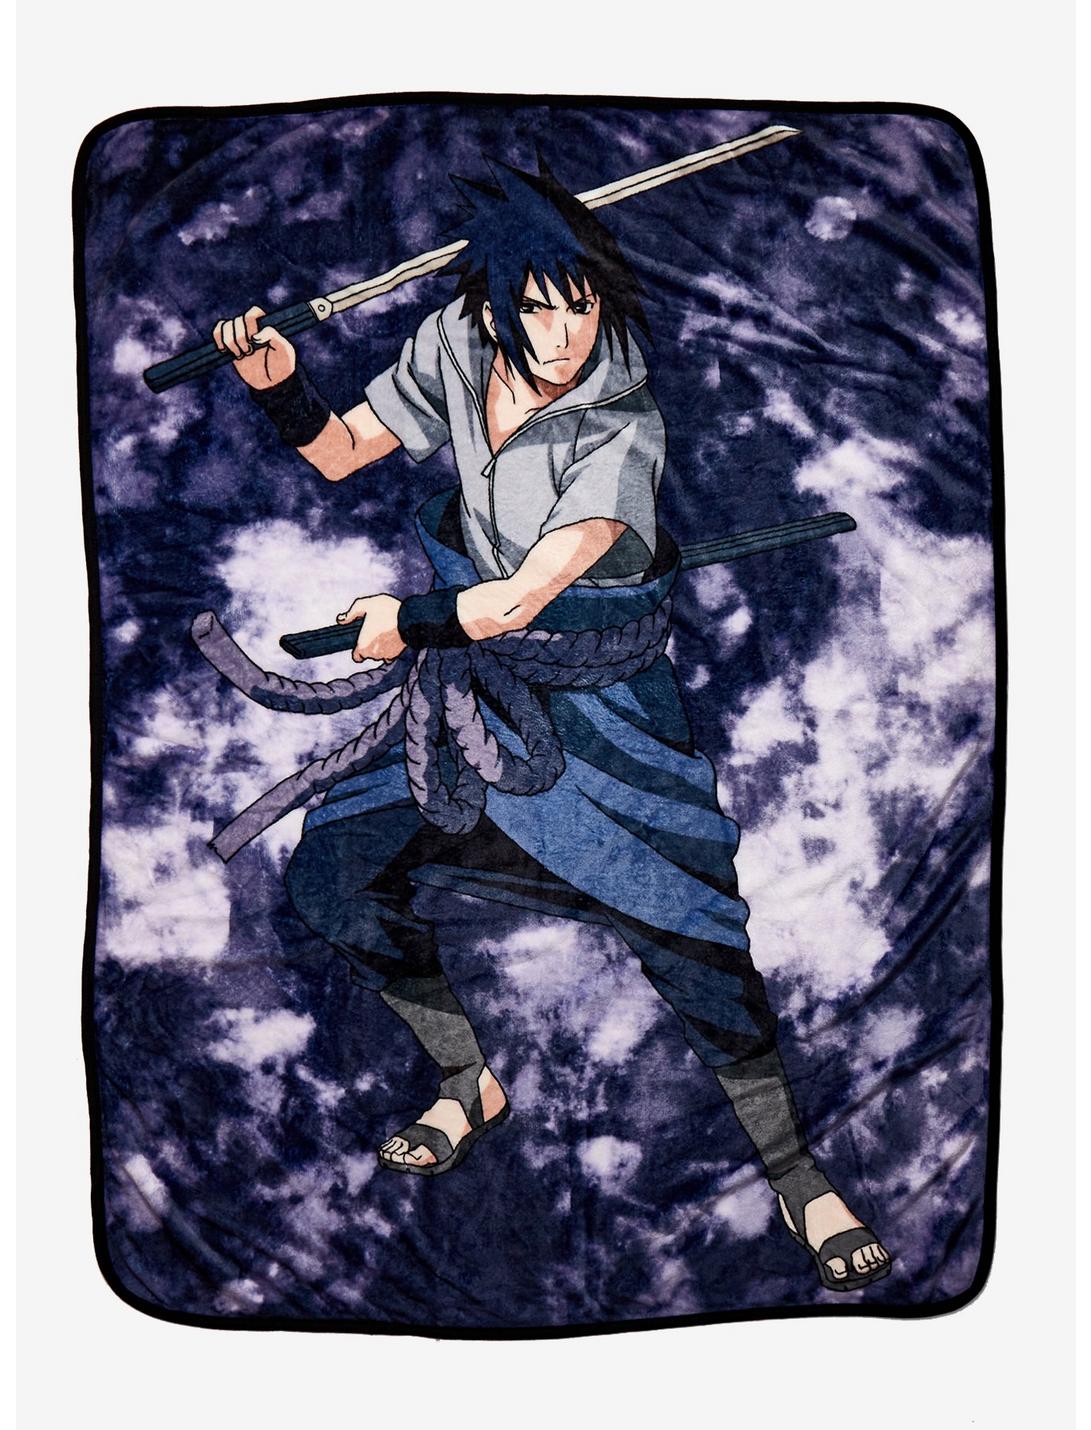 Naruto Shippuden Sasuke Purple Wash Throw Blanket, , hi-res